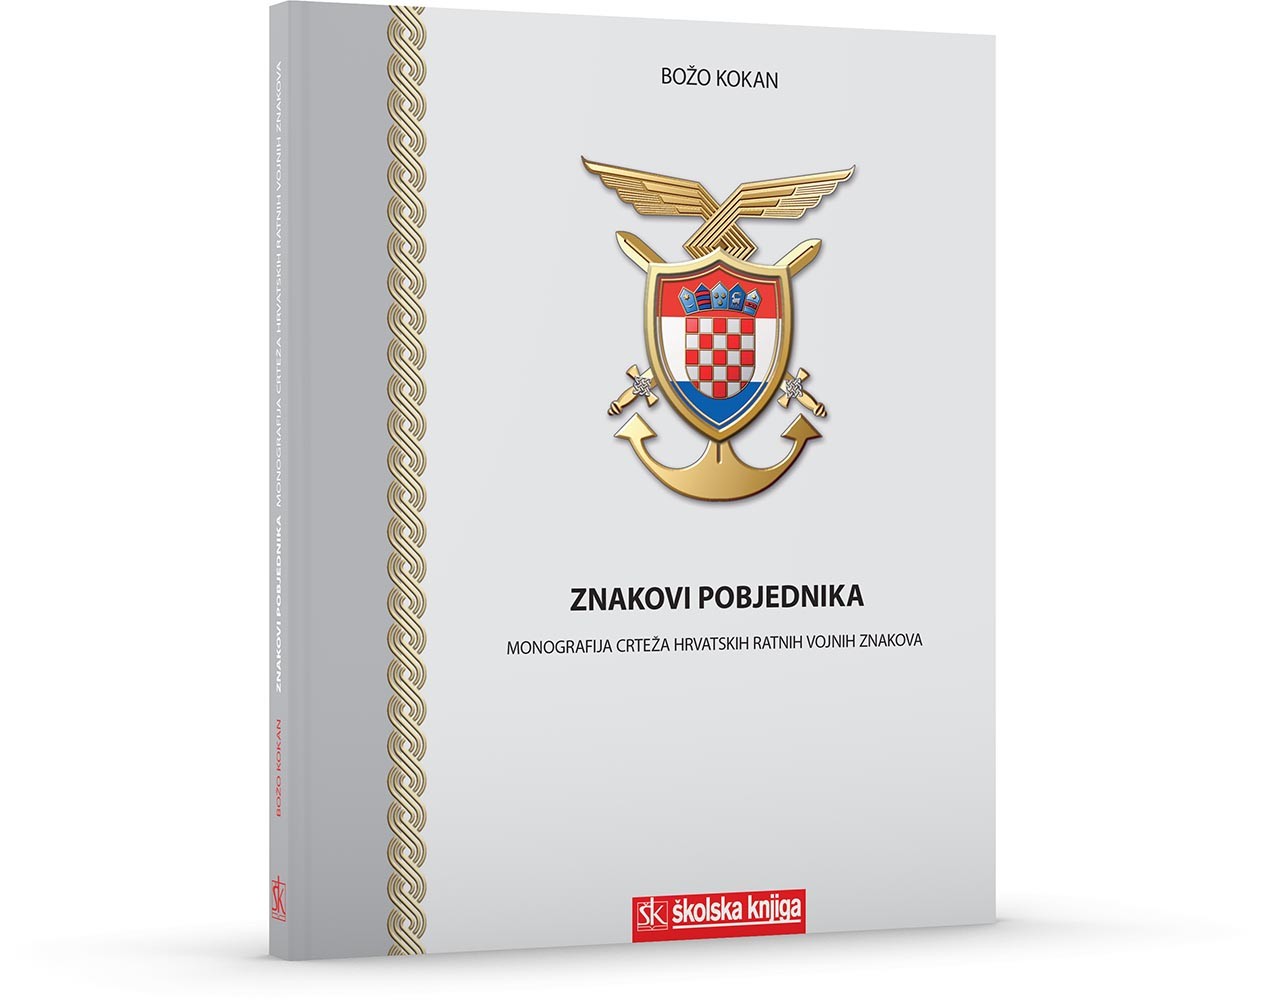 Znakovi pobjednika - Monografija crteža hrvatskih ratnih vojnih znakova